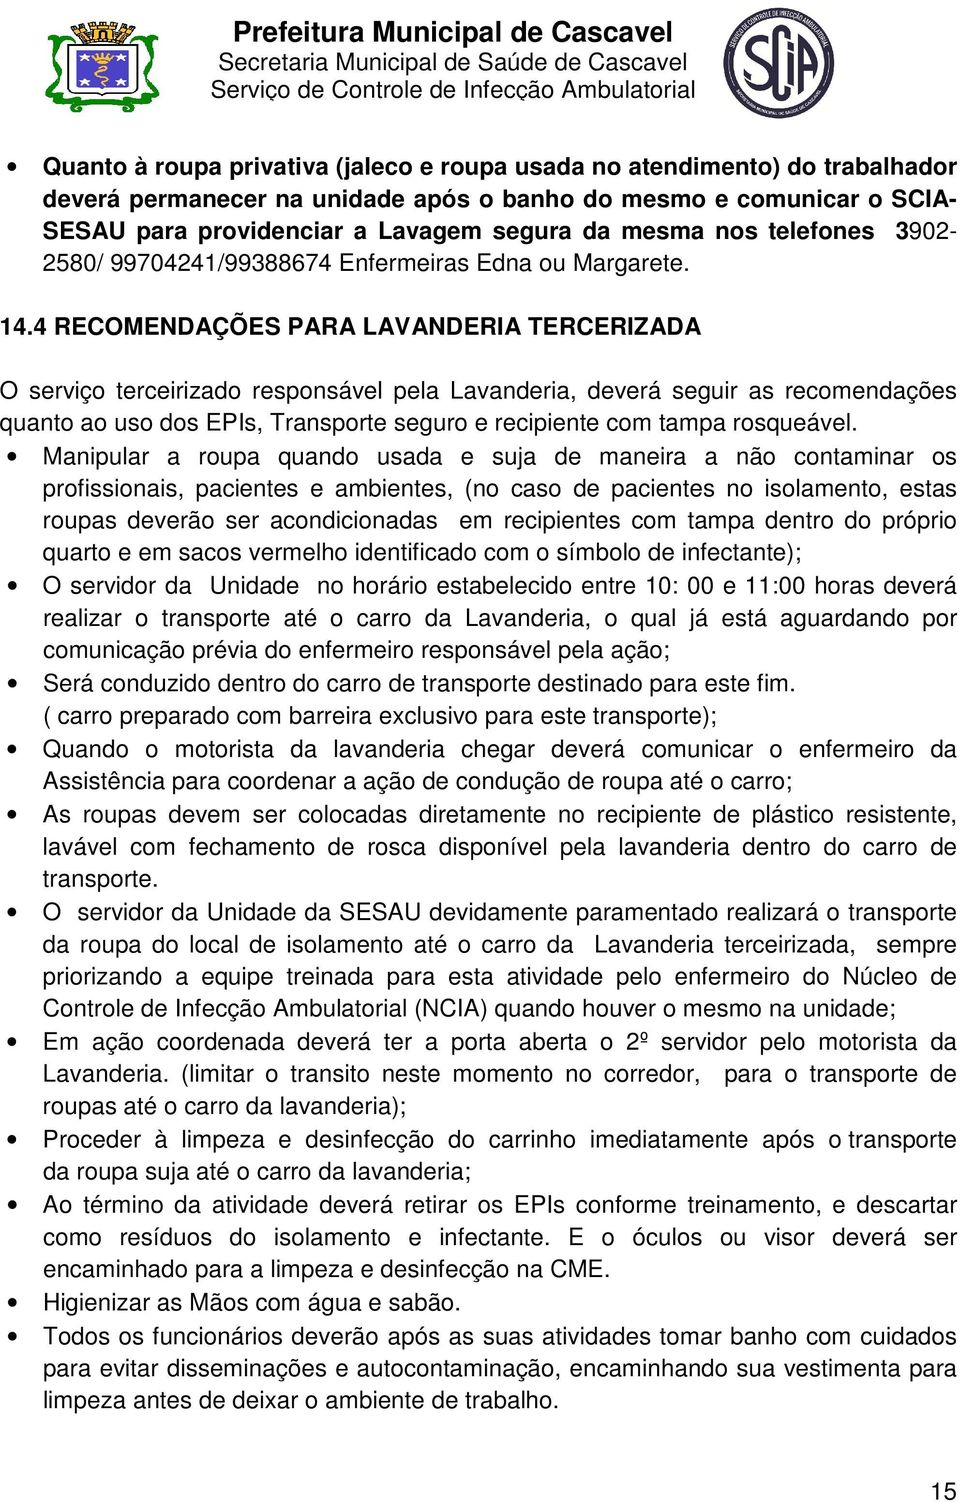 4 RECOMENDAÇÕES PARA LAVANDERIA TERCERIZADA O serviço terceirizado responsável pela Lavanderia, deverá seguir as recomendações quanto ao uso dos EPIs, Transporte seguro e recipiente com tampa